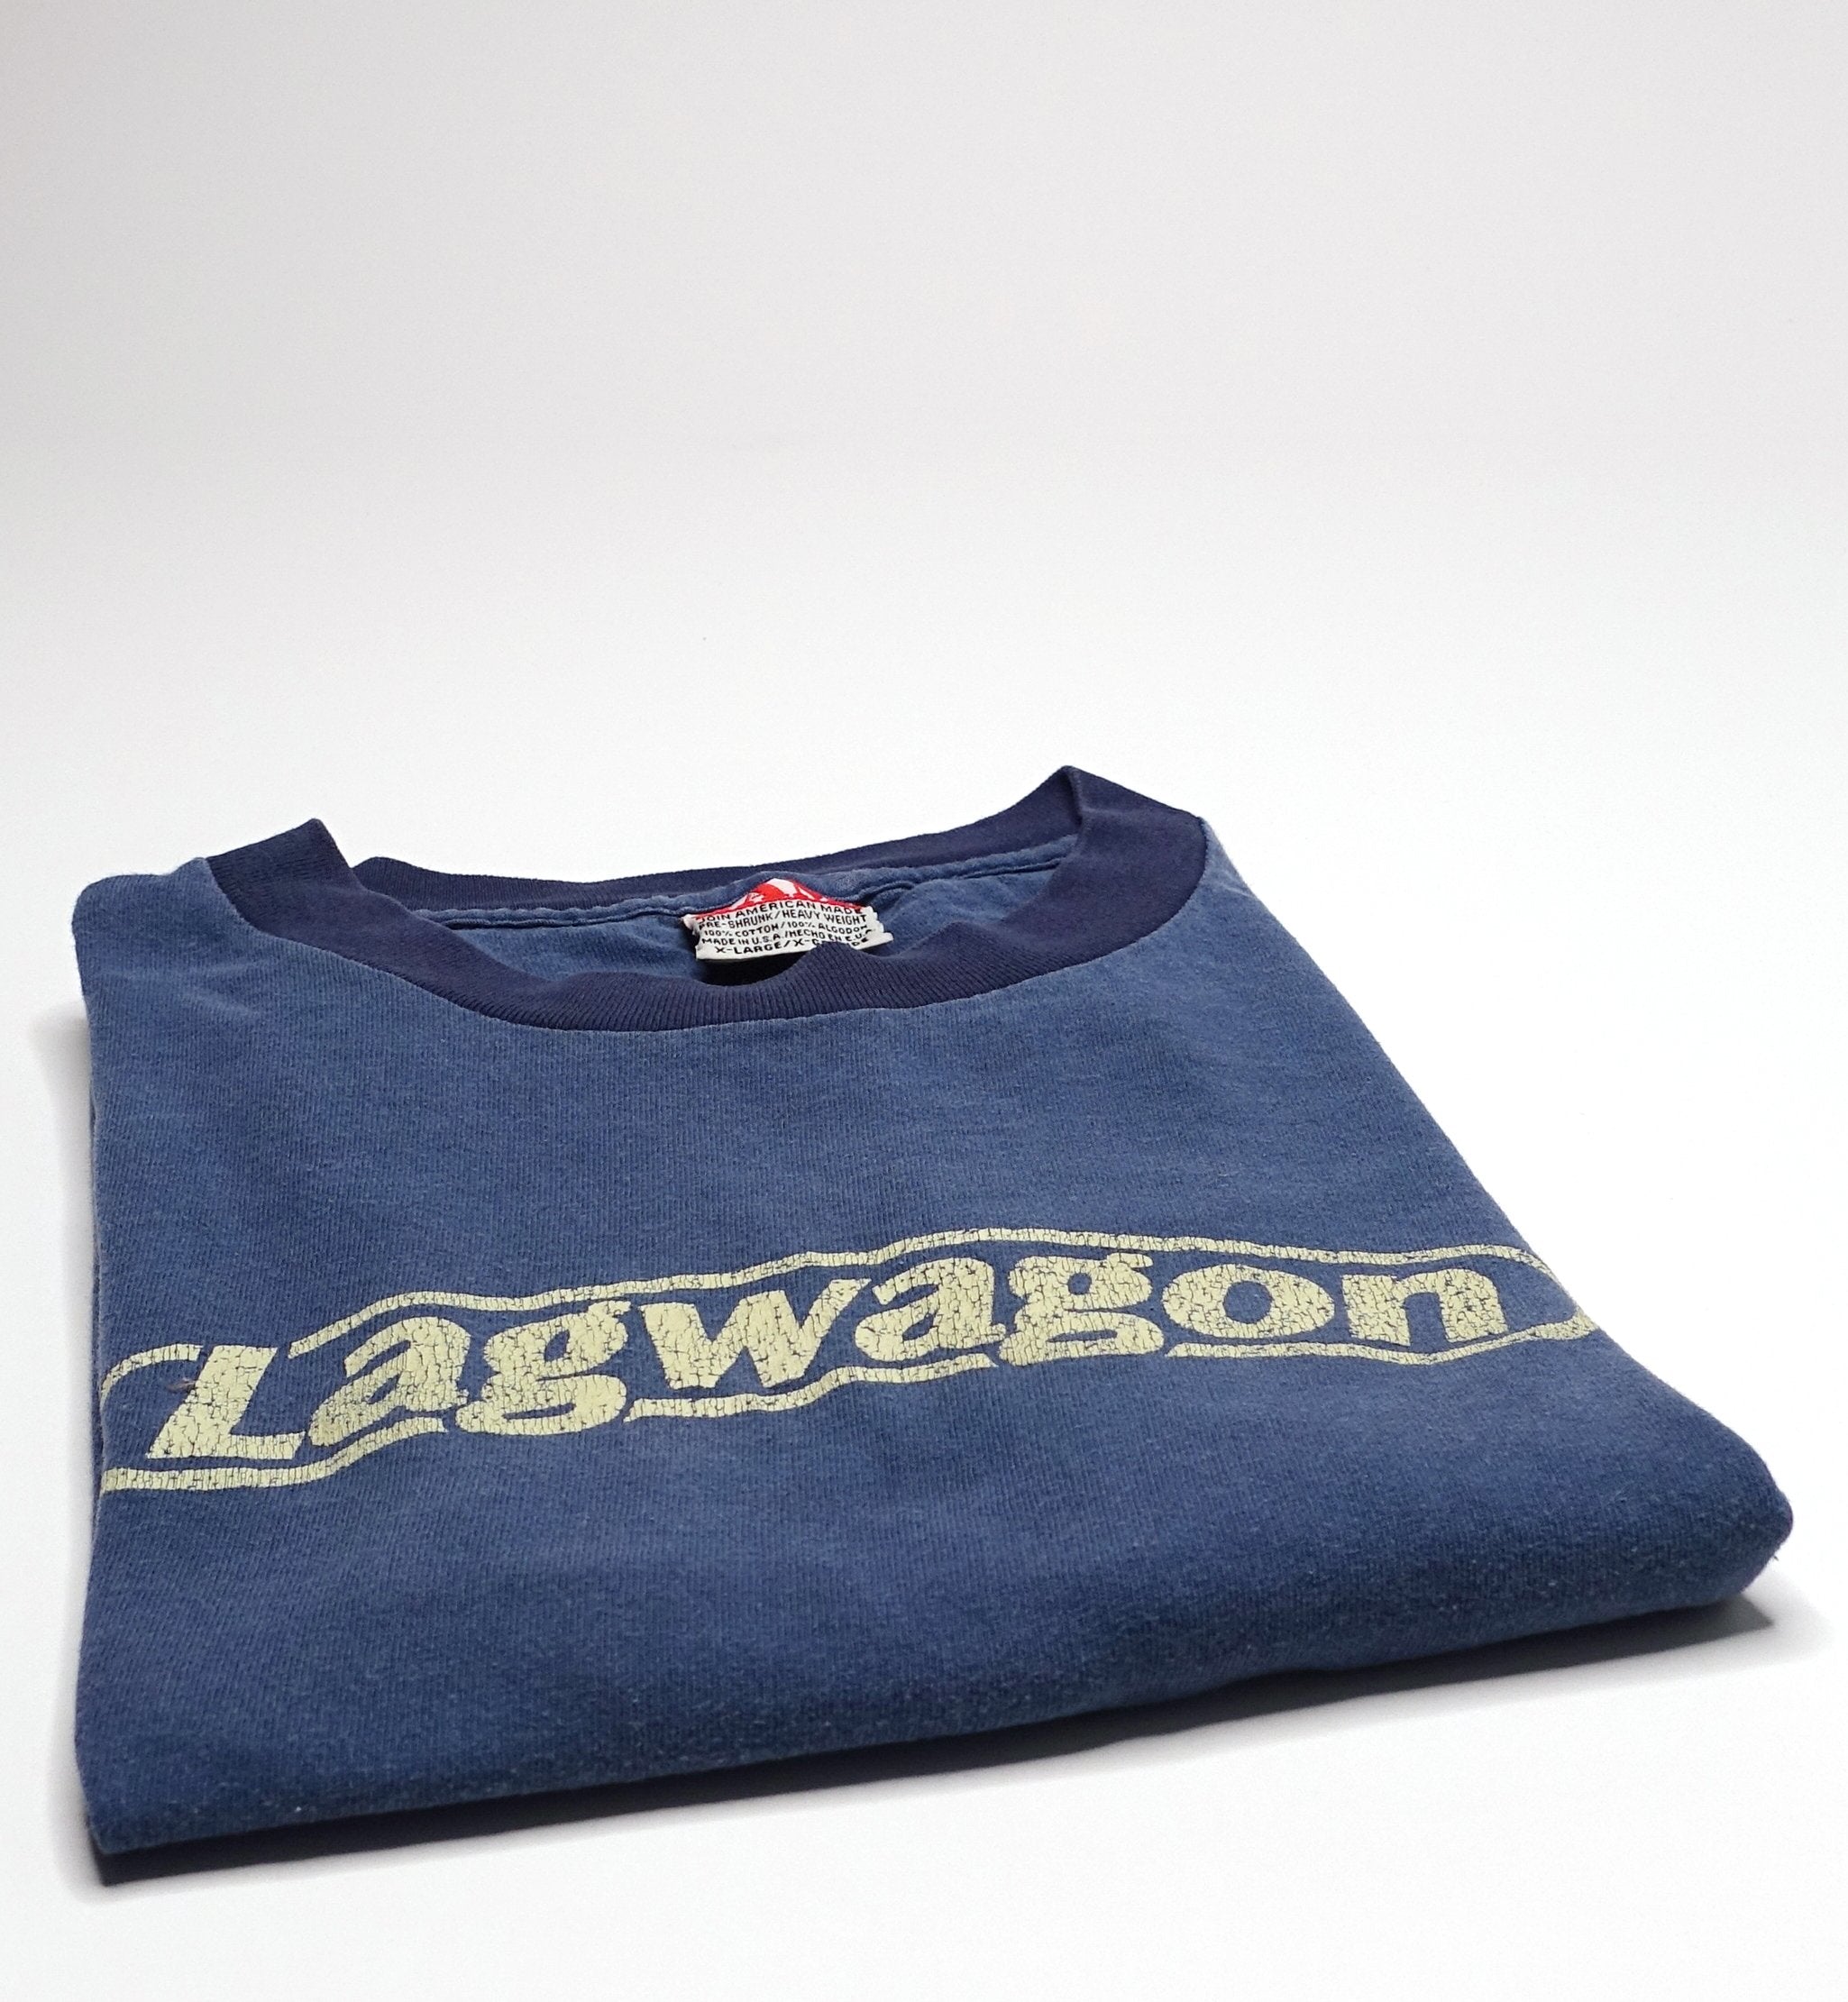 Lagwagon - Hoss 1996 Winter Tour Shirt Size XL